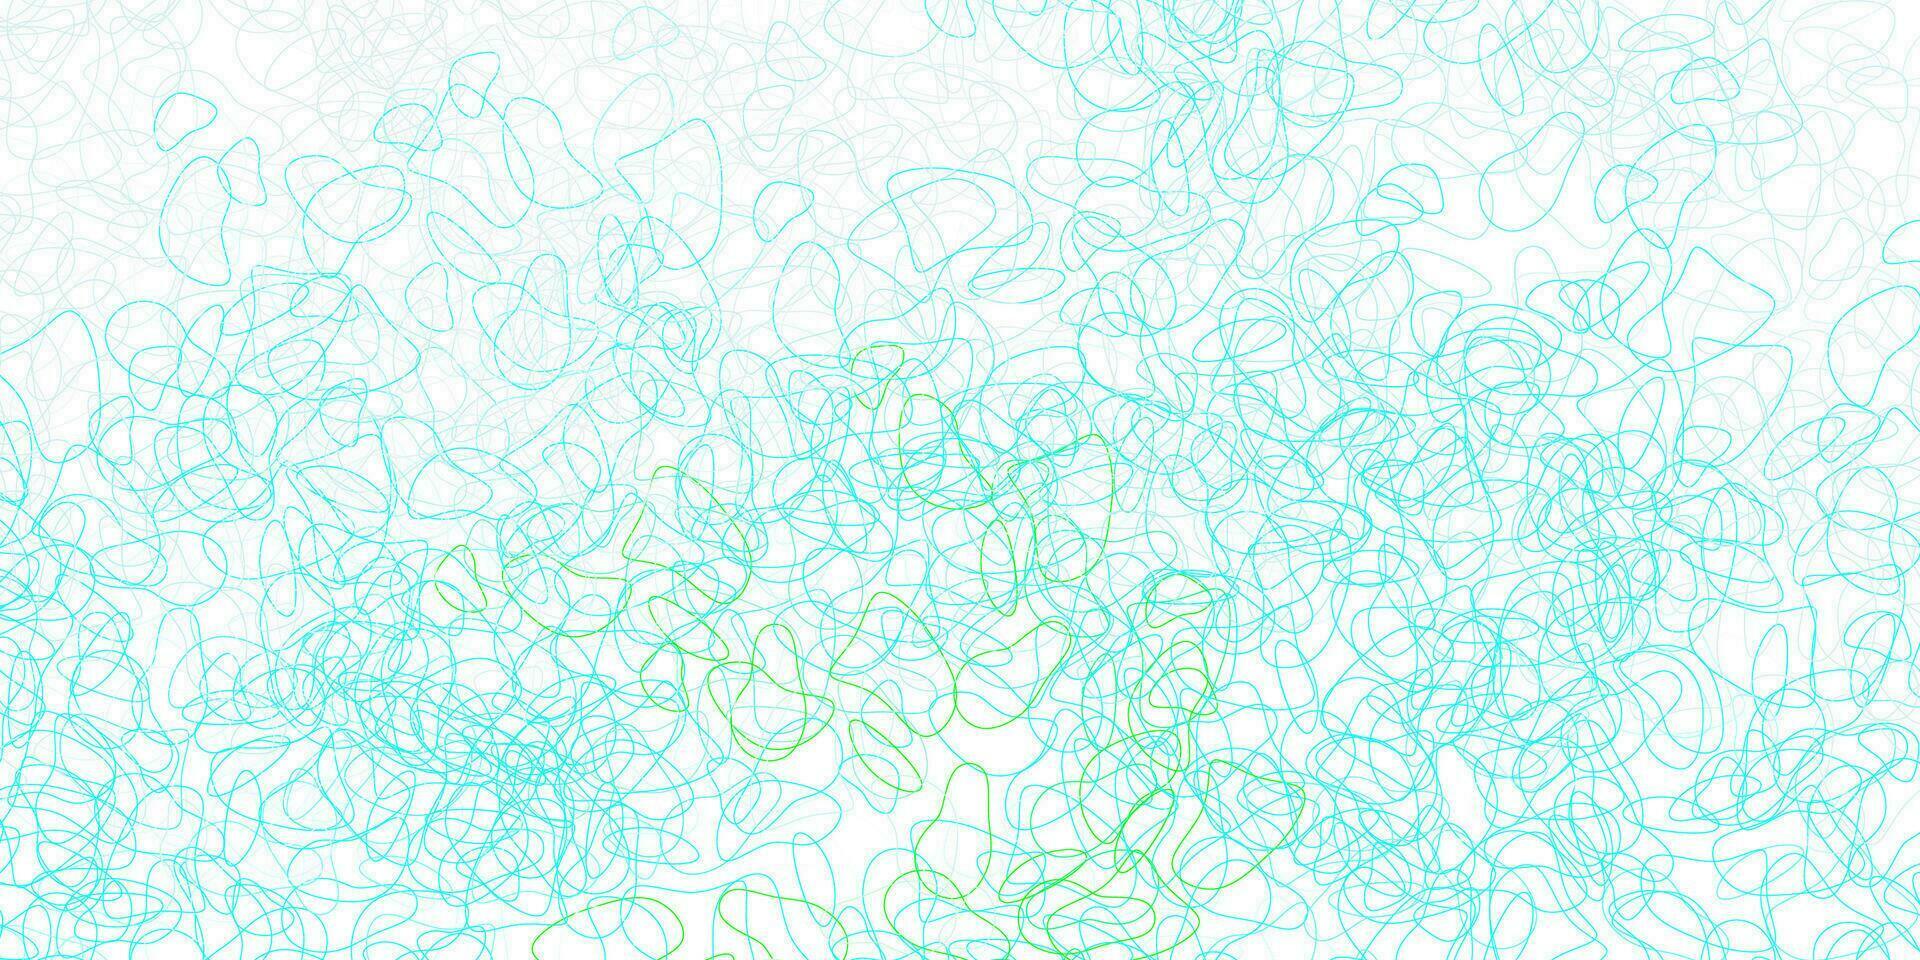 ljusblått, grönt vektormönster med abstrakta former. vektor